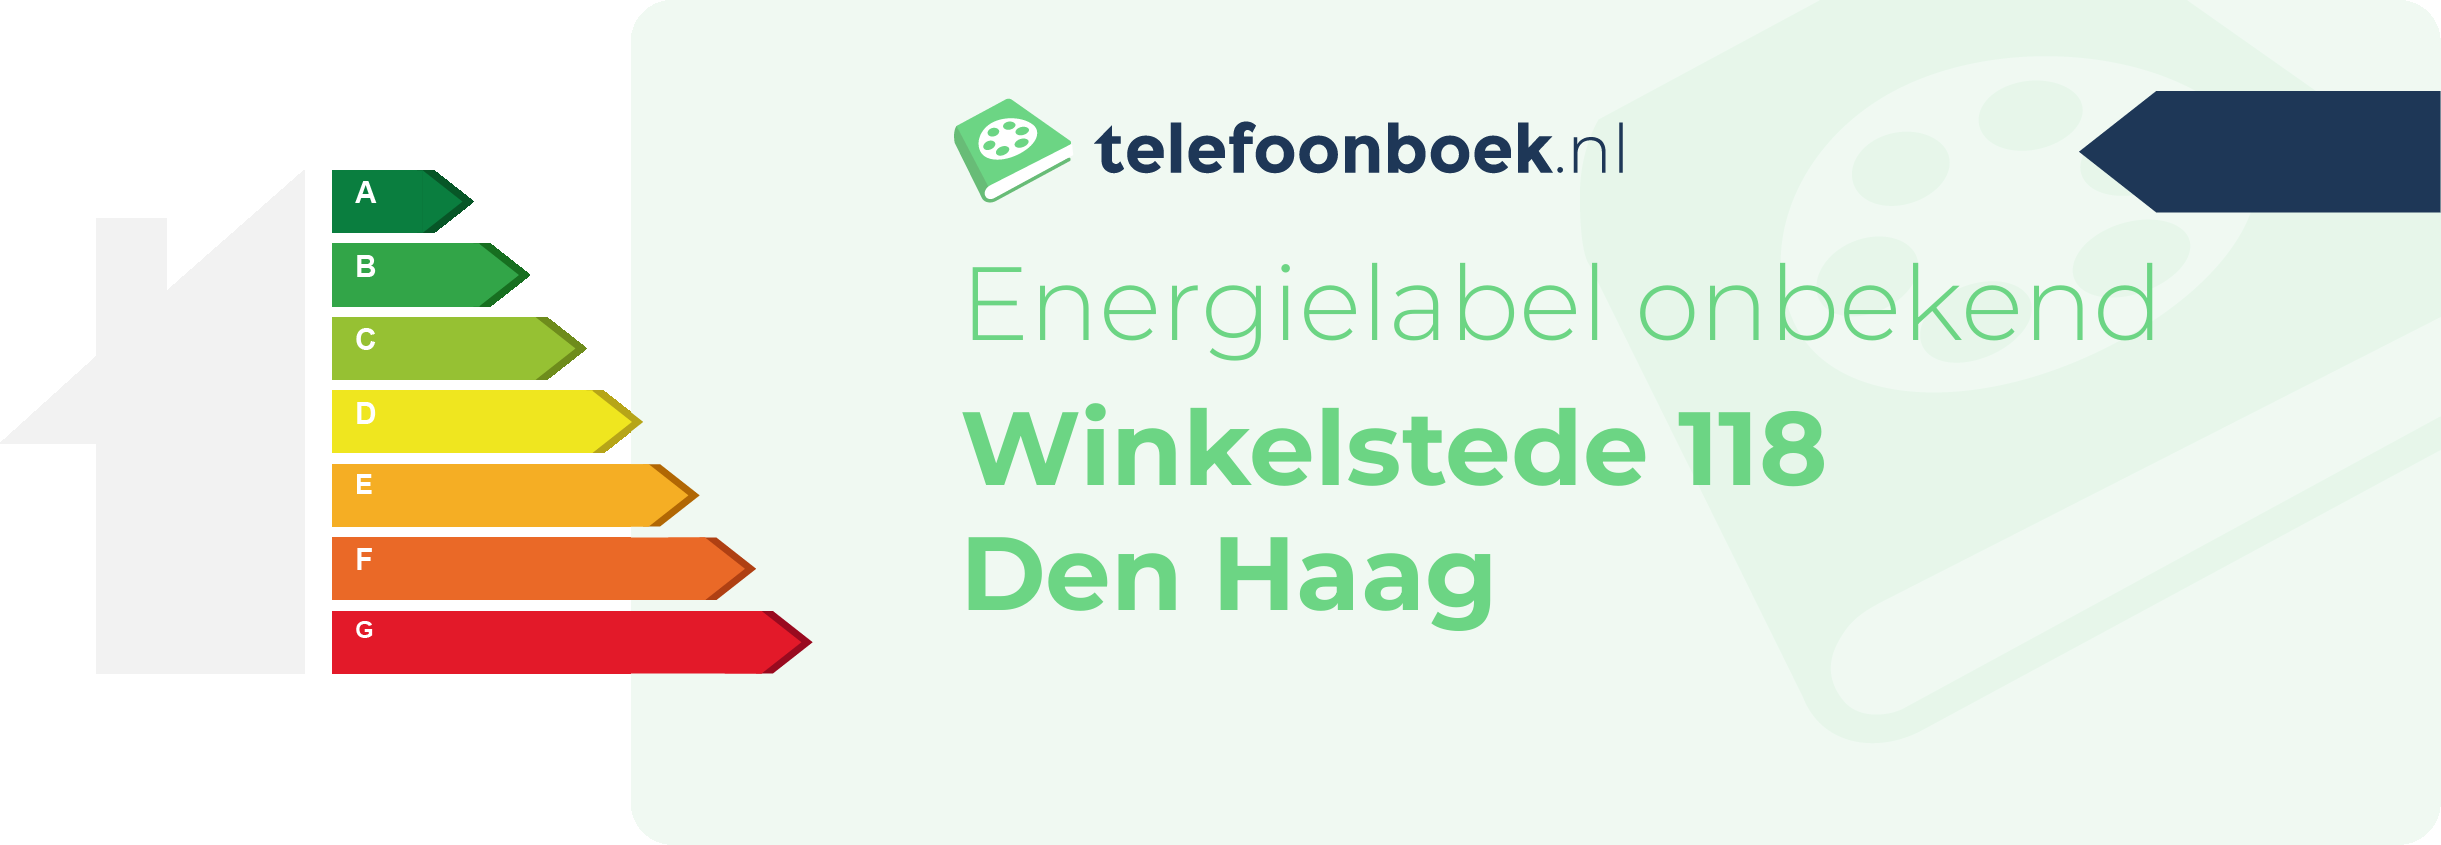 Energielabel Winkelstede 118 Den Haag